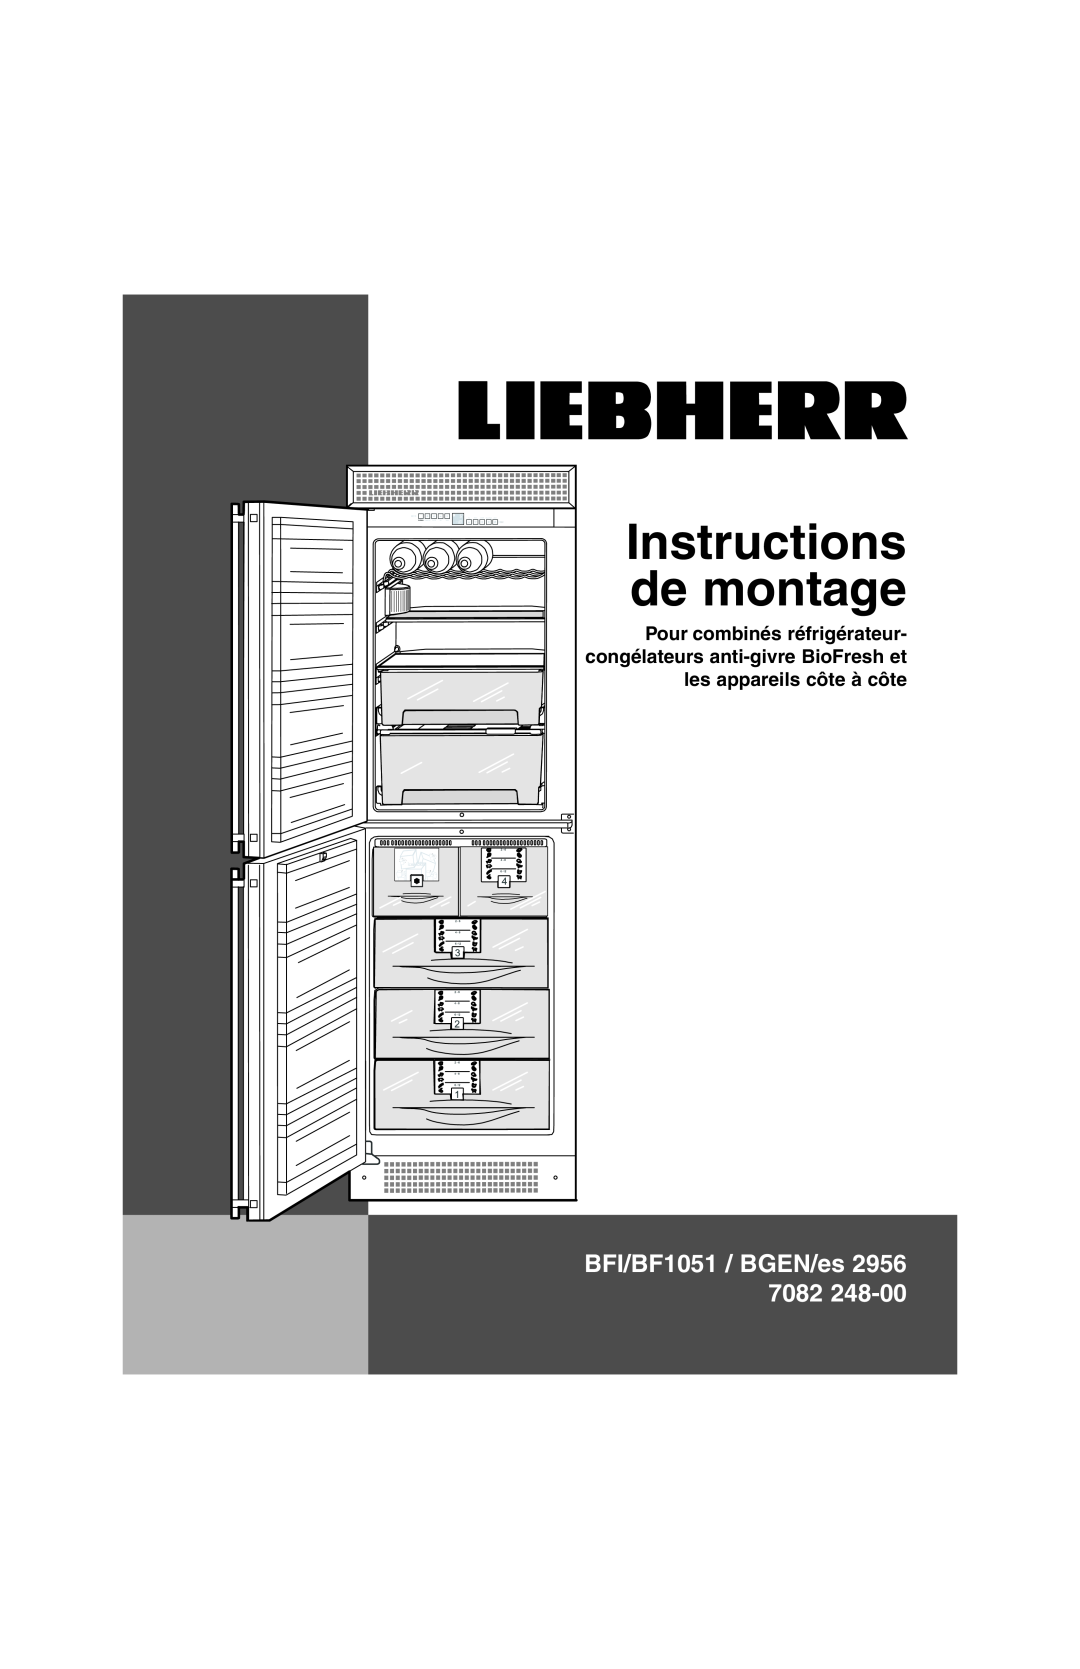 Liebherr BFI1051 installation instructions Instructions de montage, BFI/BF1051 / BGEN/es 2956 7082 